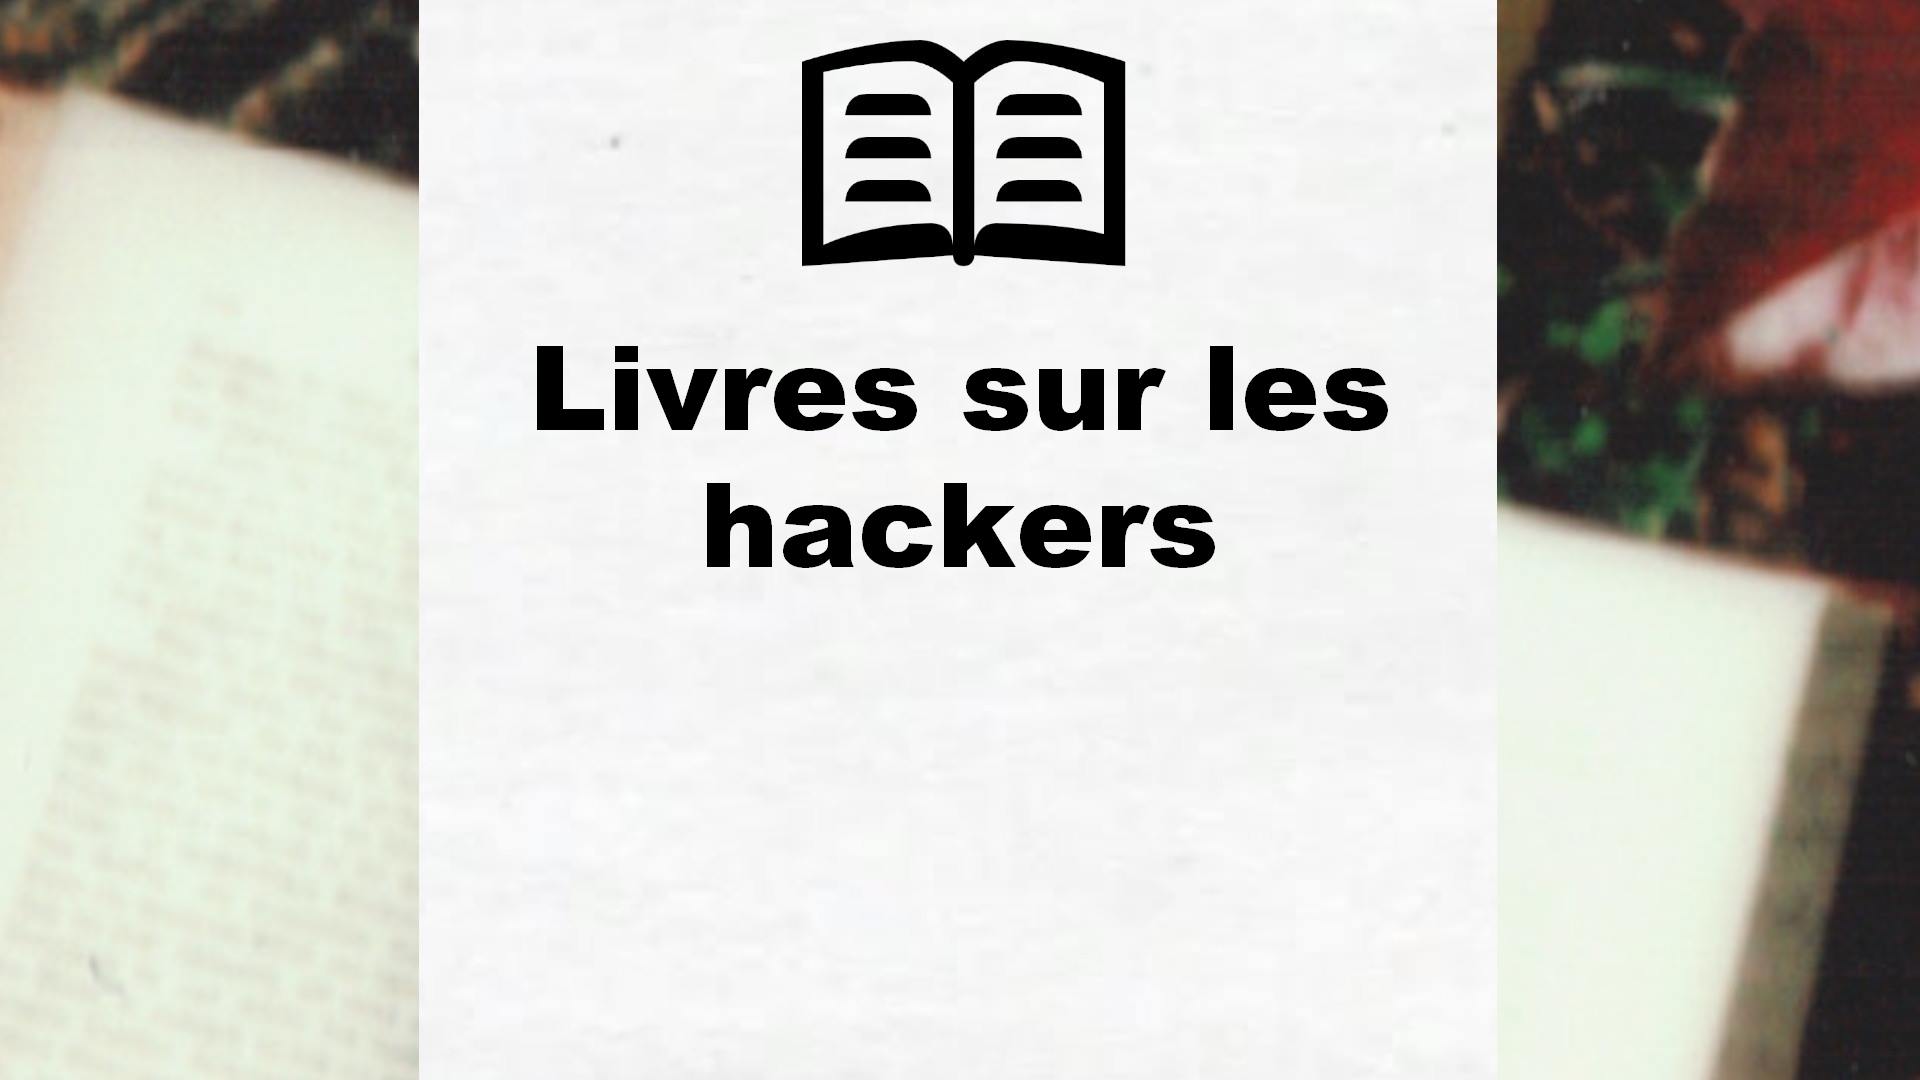 Livres sur les hackers